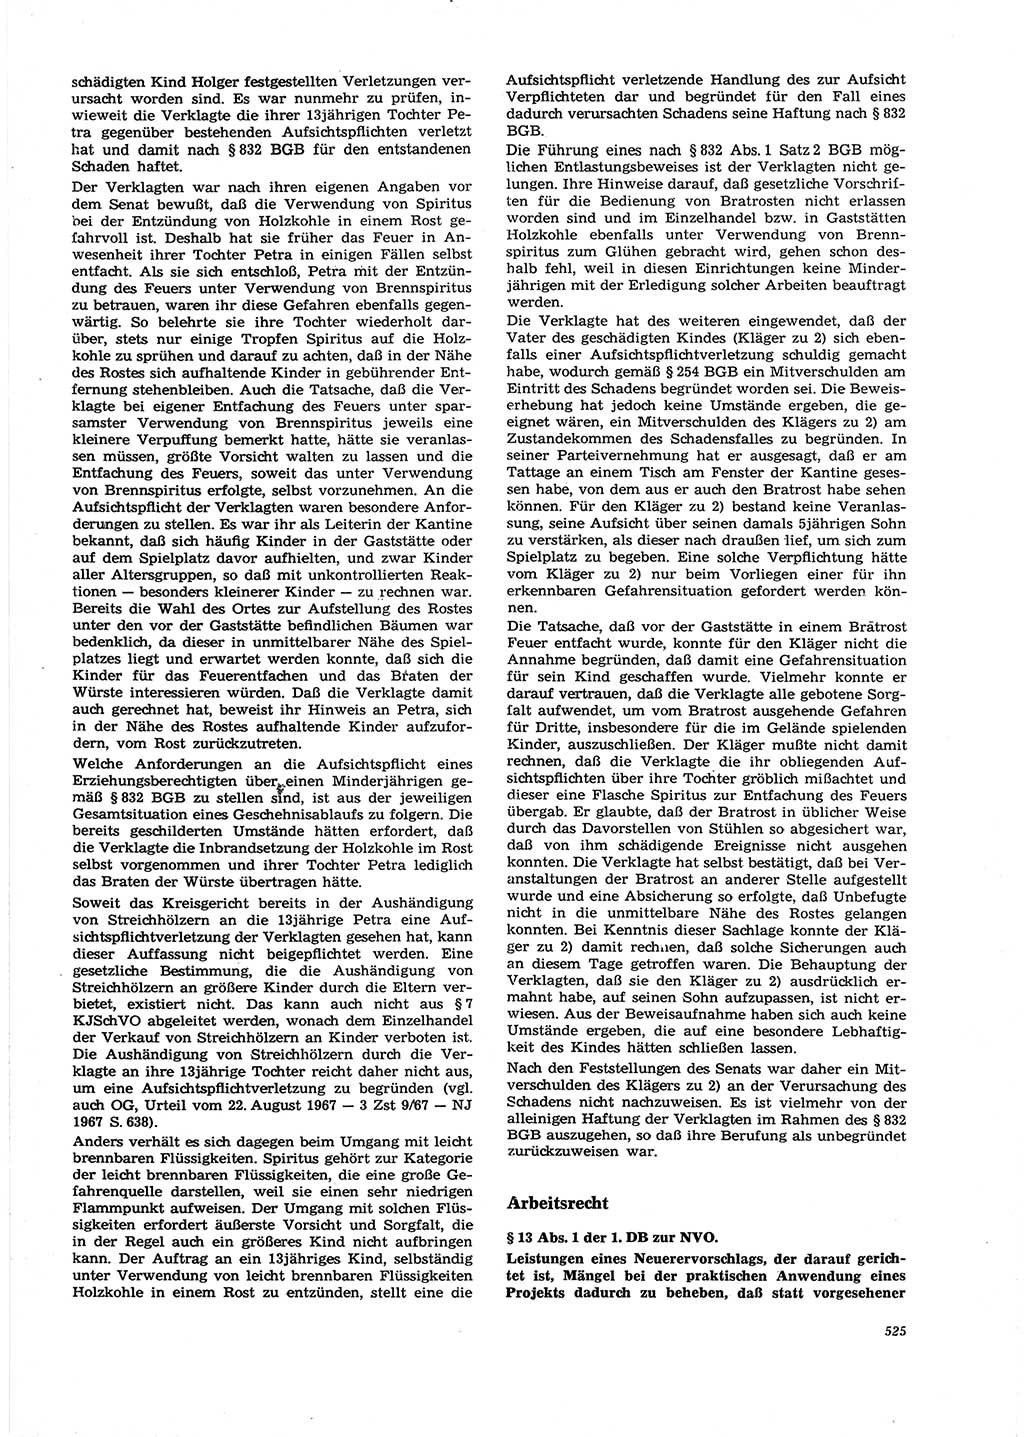 Neue Justiz (NJ), Zeitschrift für Recht und Rechtswissenschaft [Deutsche Demokratische Republik (DDR)], 27. Jahrgang 1973, Seite 525 (NJ DDR 1973, S. 525)